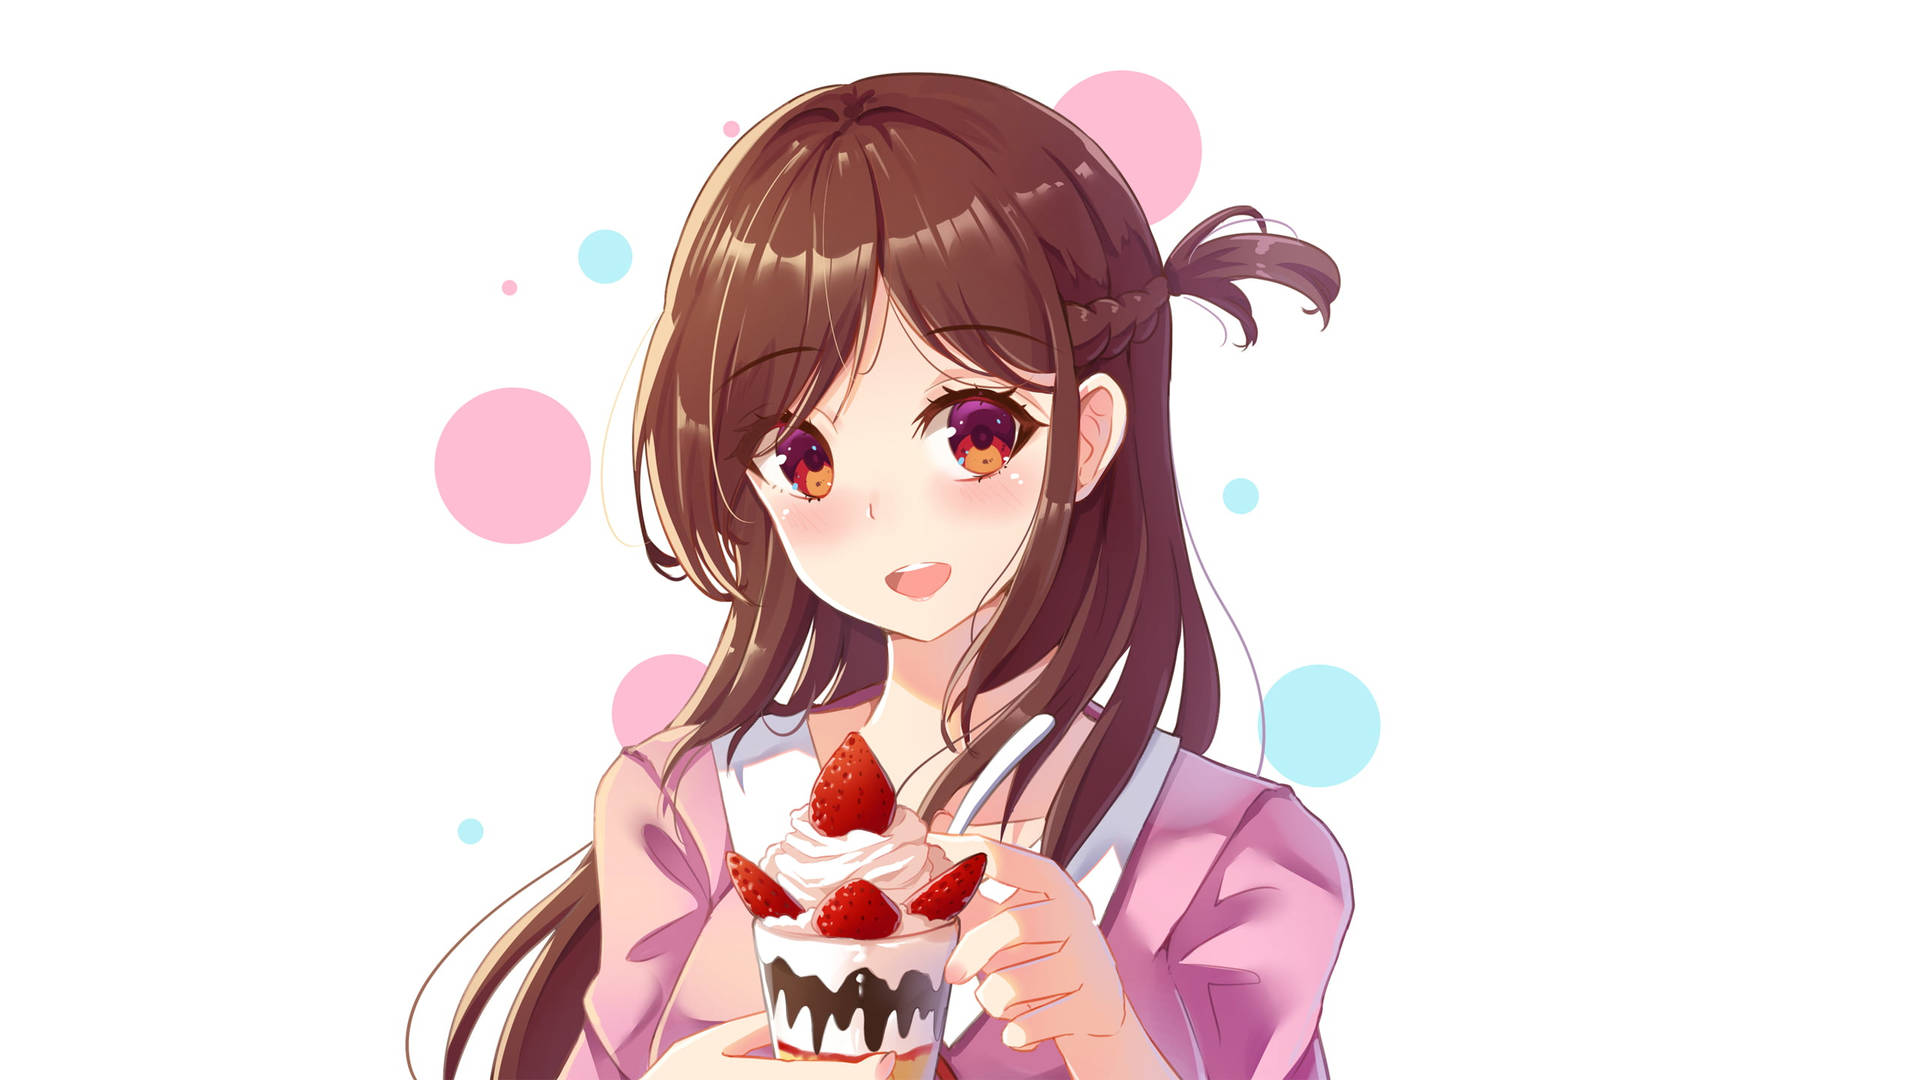 Rent A Girlfriend Chizuru With Dessert Wallpaper